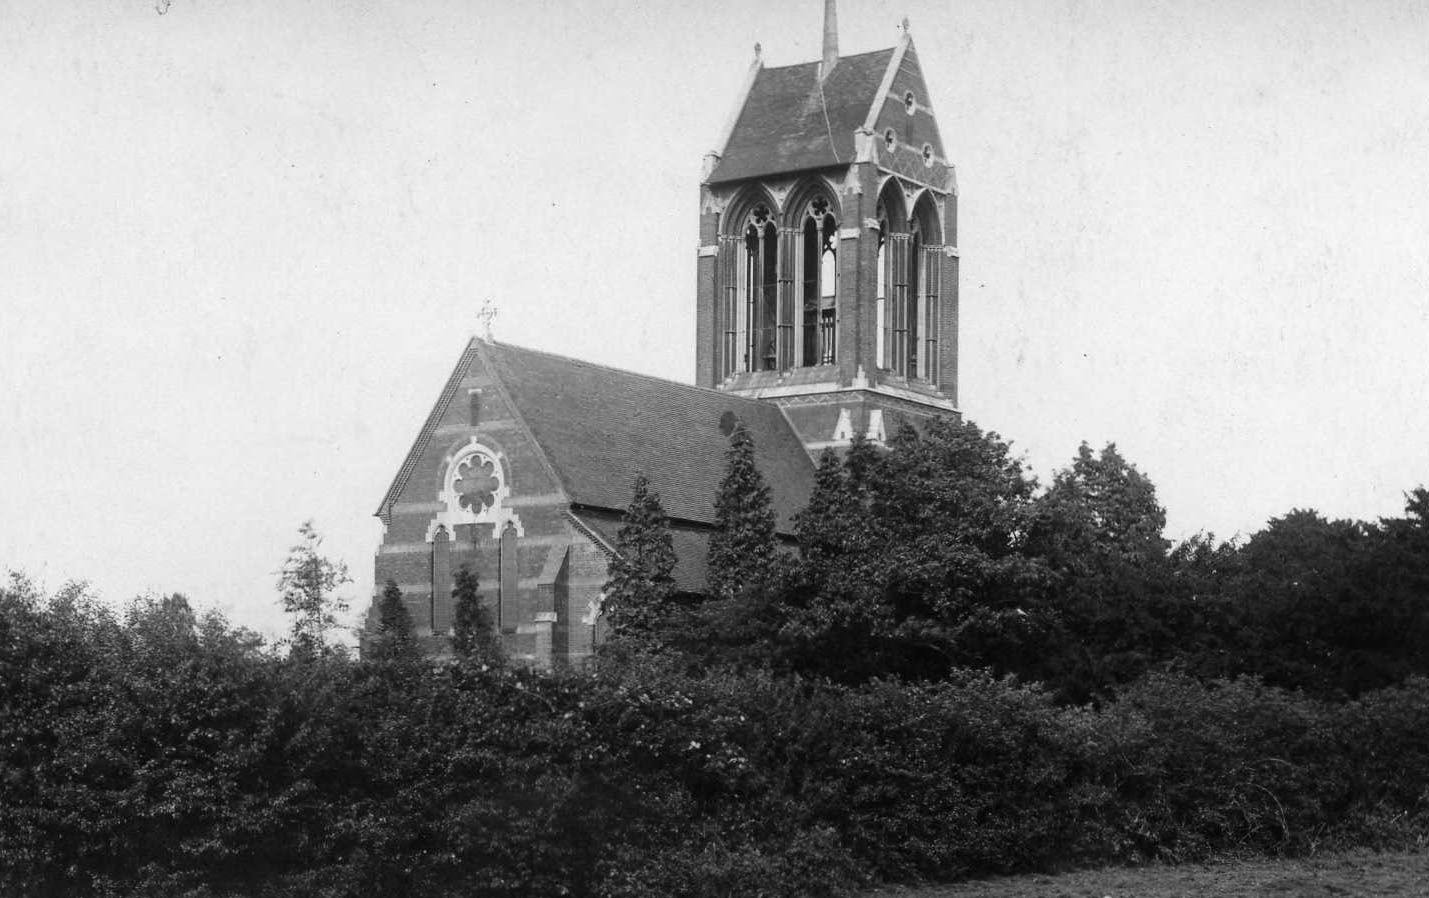 Wythall Parish Church